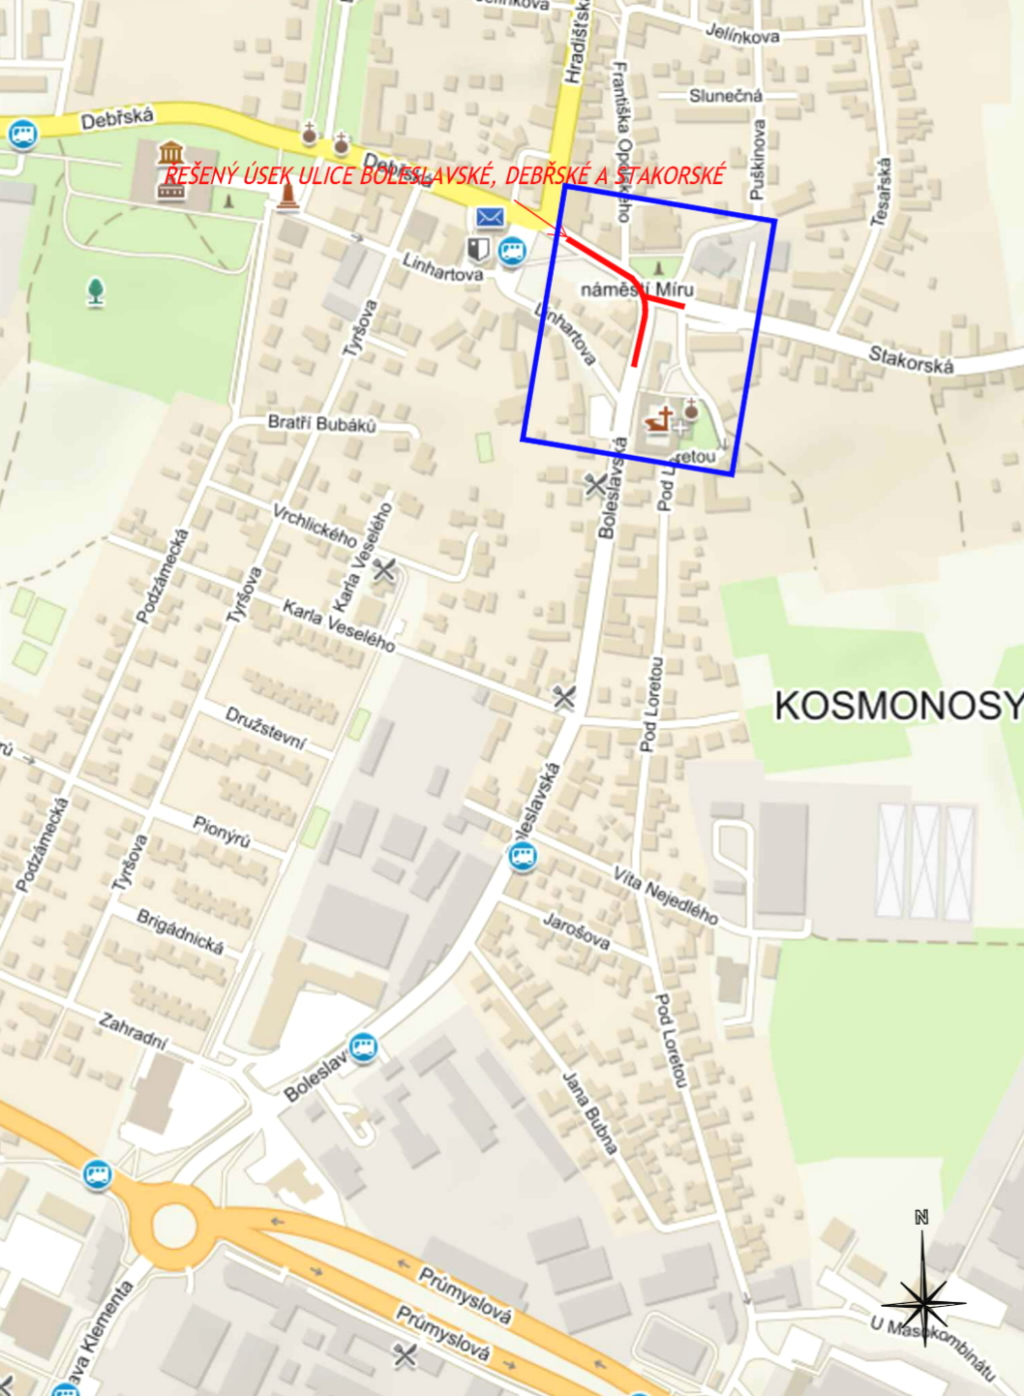 V Kosmonosech bude od března do října uzavřena křižovatka Debřské, Boleslavské a Stakorské ulice. Zdroj: CR PROJECT